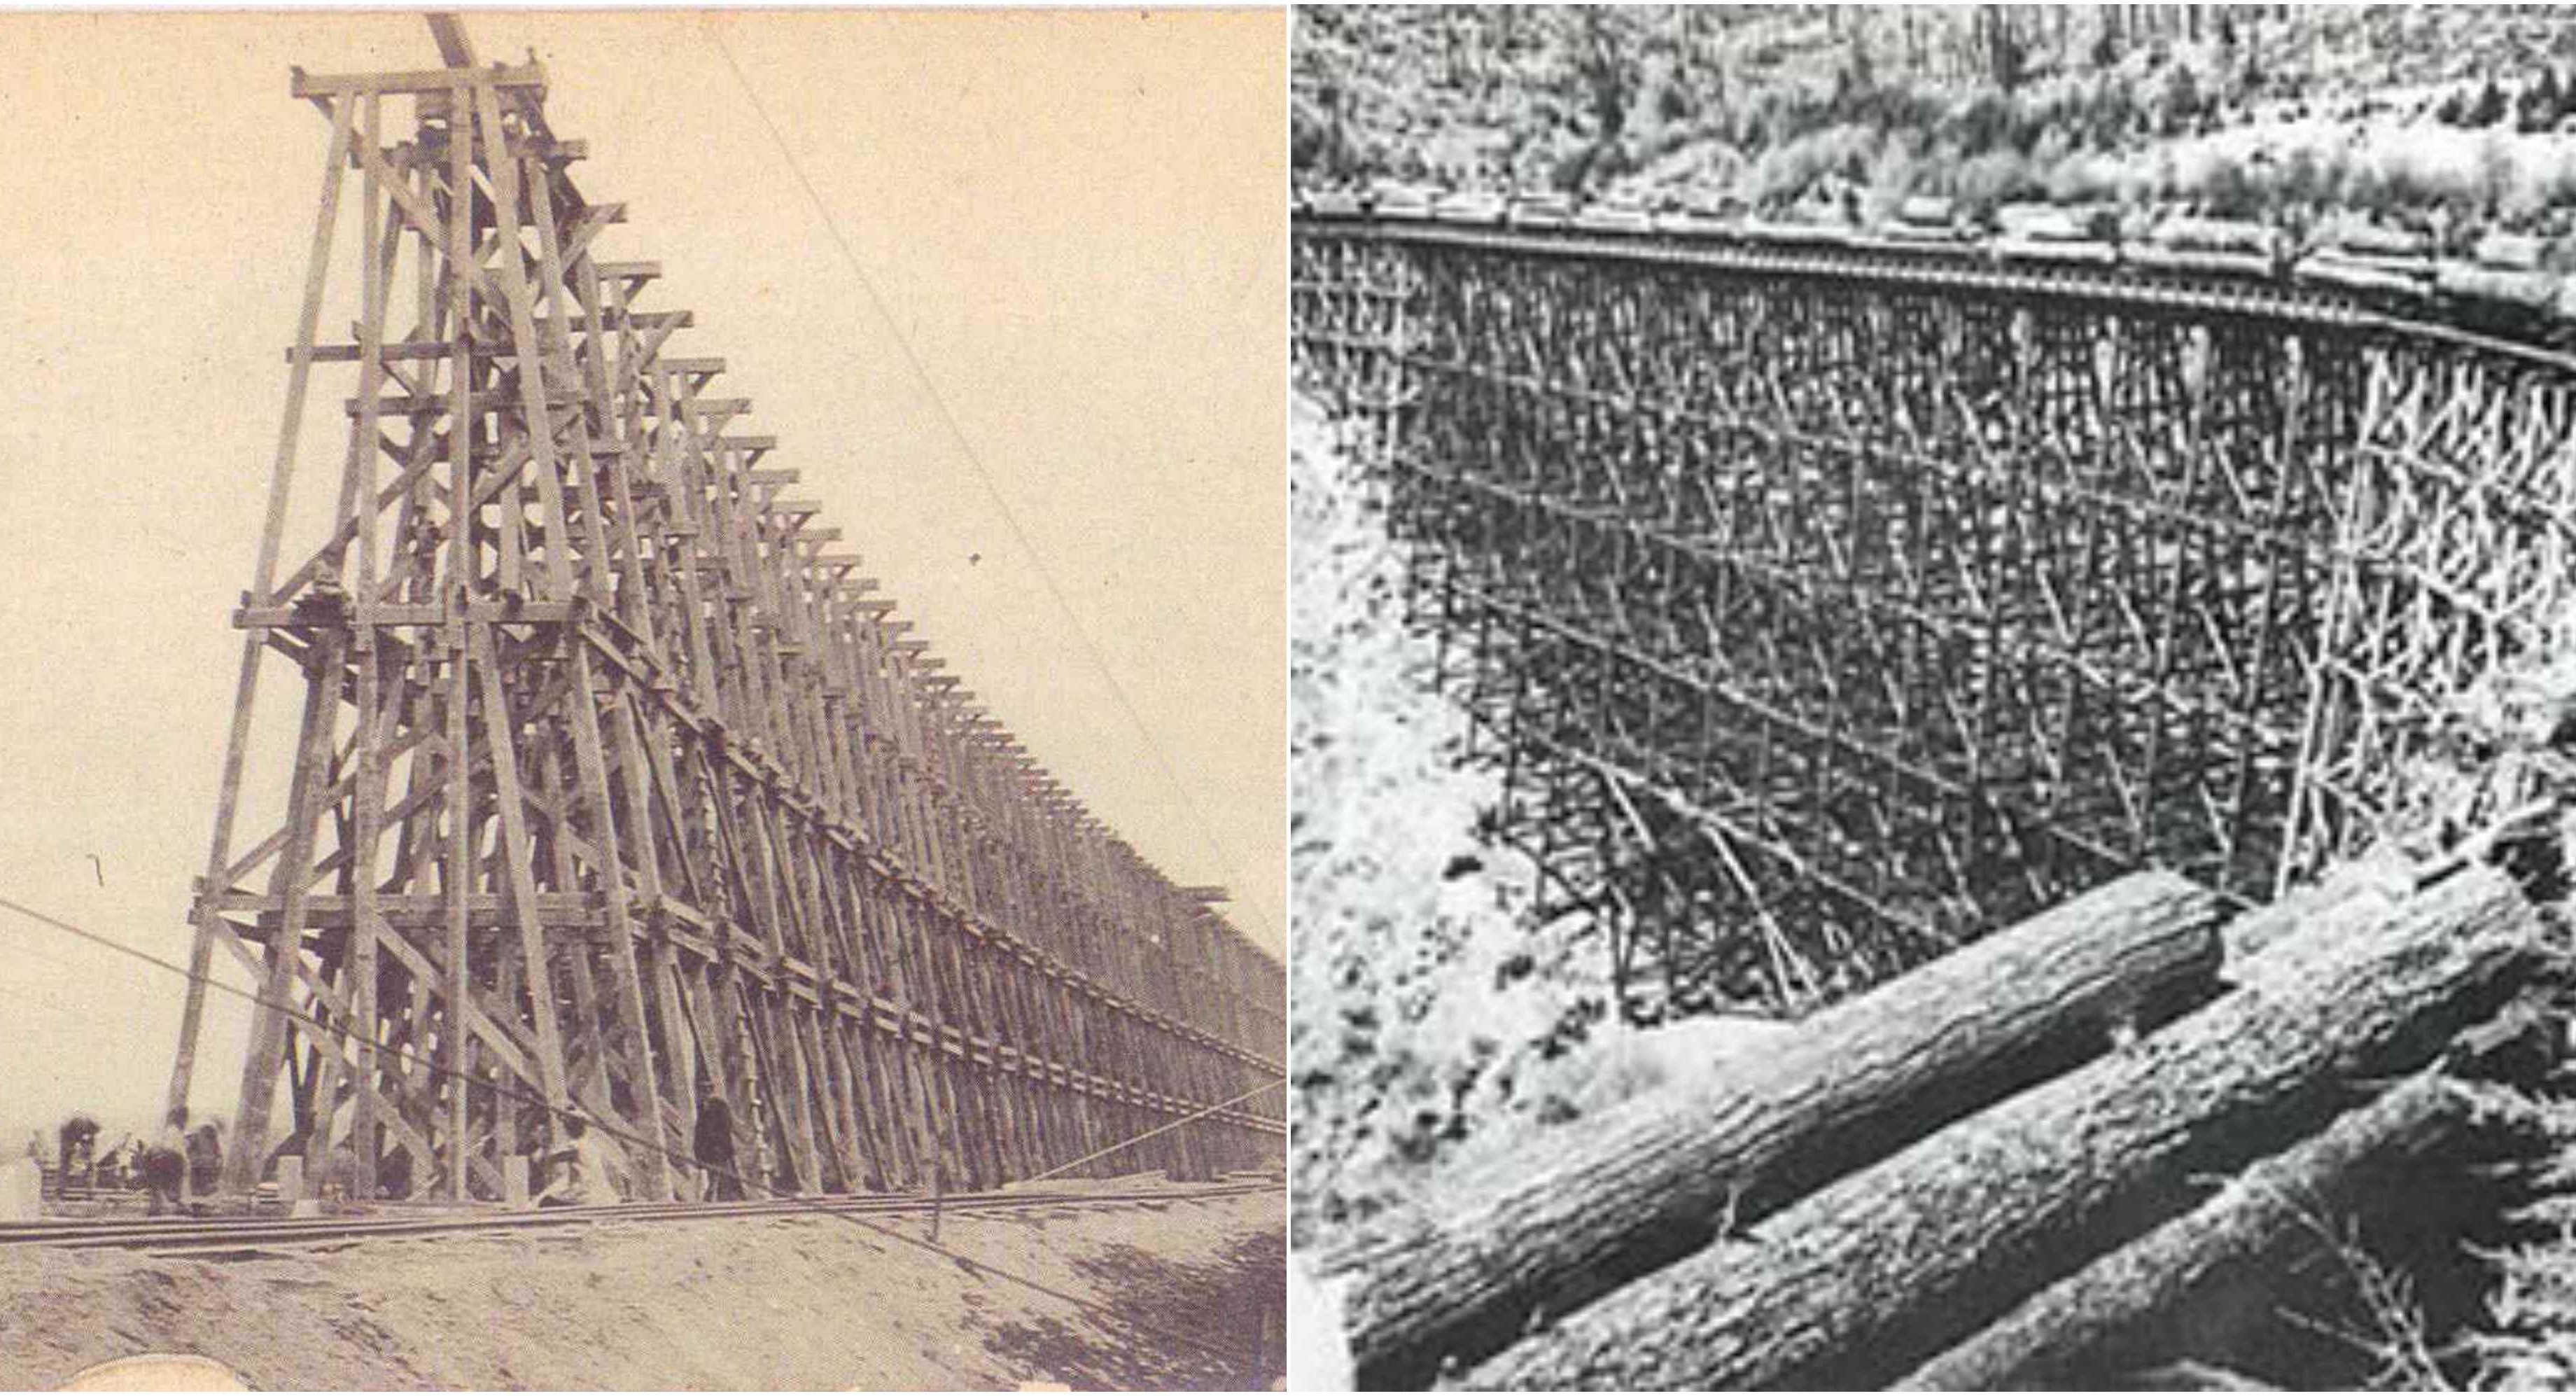 ชมการสร้างสะพานรถไฟจากไม้ในช่วงศตวรรษที่ 19 ในยุคที่เทคโนโลยียังไม่ก้าวหน้าเท่าไหร่